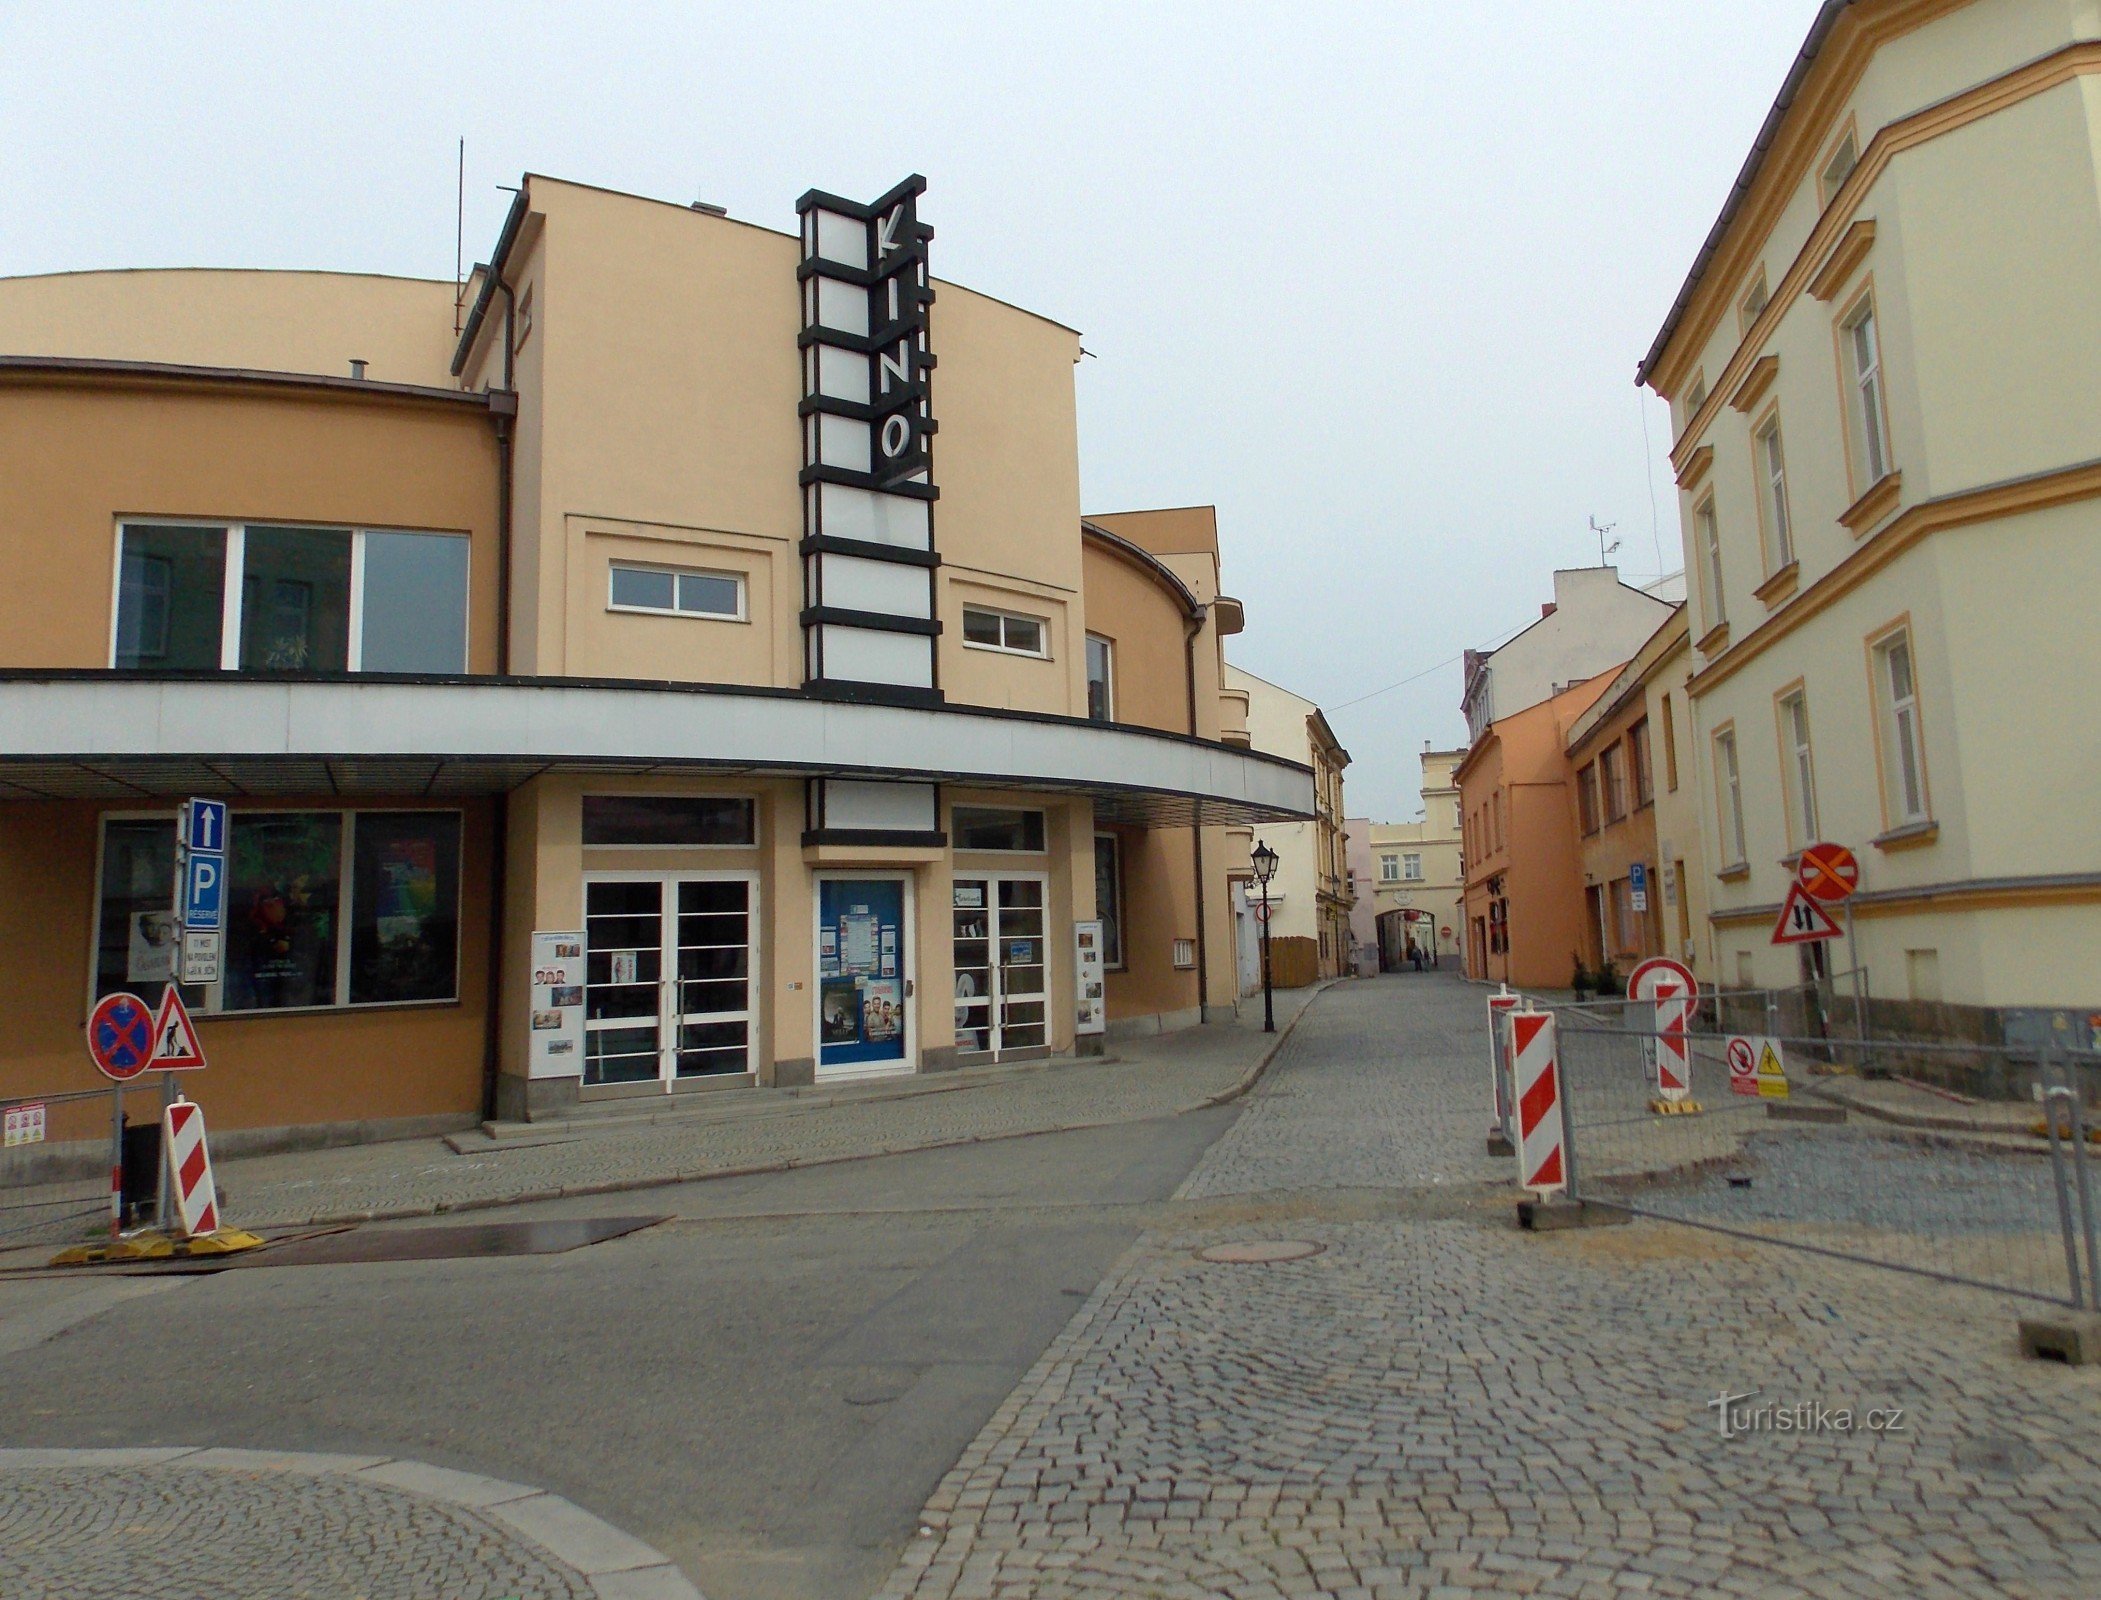 Nové Jičín的Květen电影院